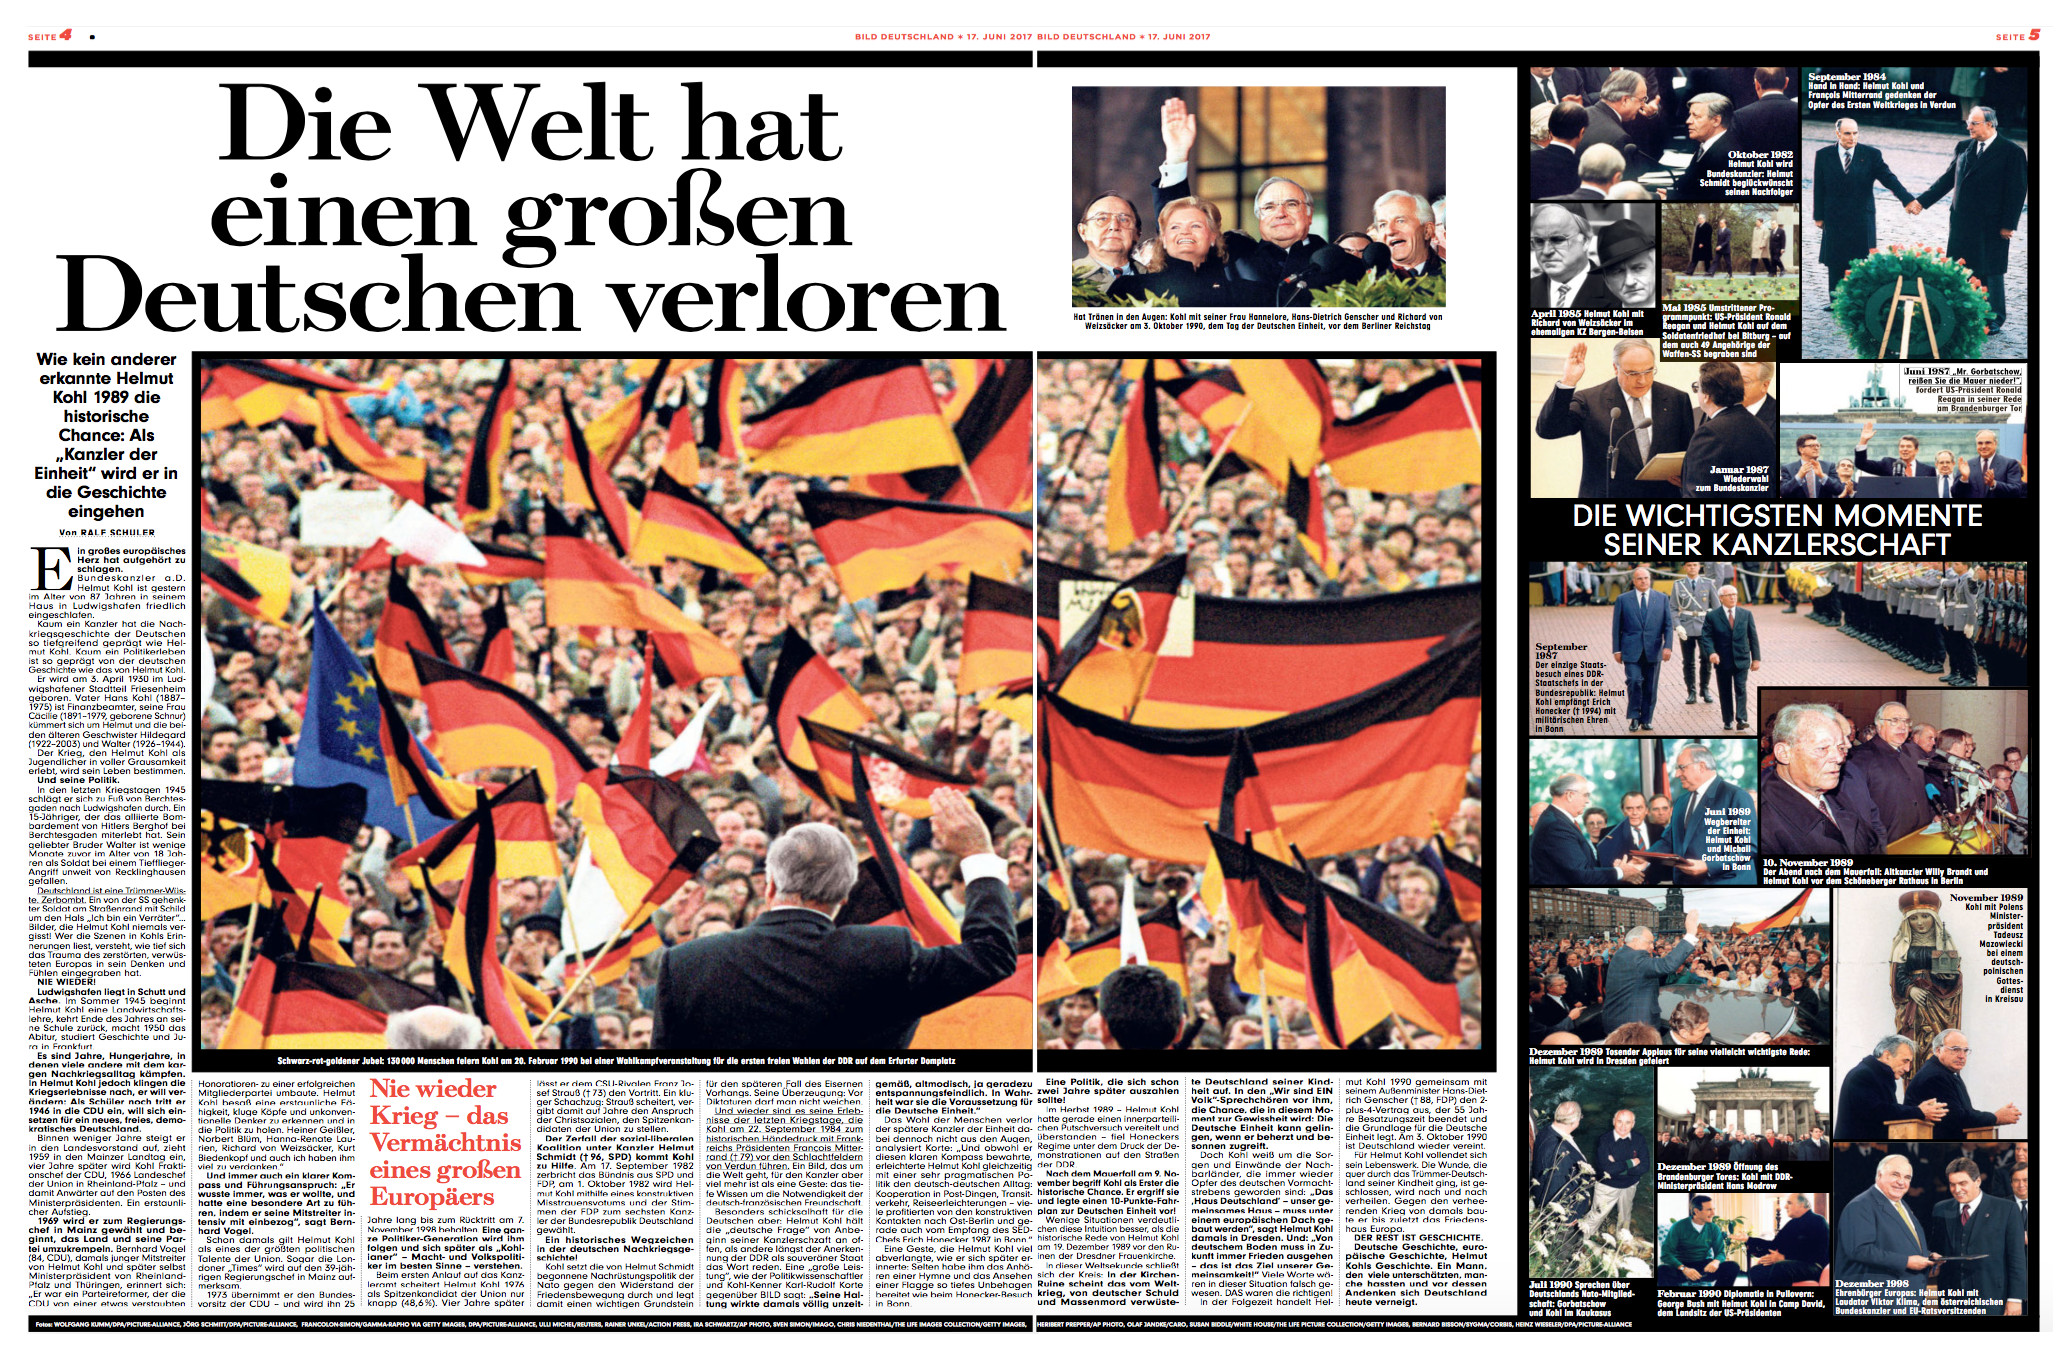 Doppelseite aus "Bild" vom 17.6.2017 mit vielen Fotos von Helmut Kohl und der Text-Überschrift: "Die Welt hat einen großen Deutschen verloren"